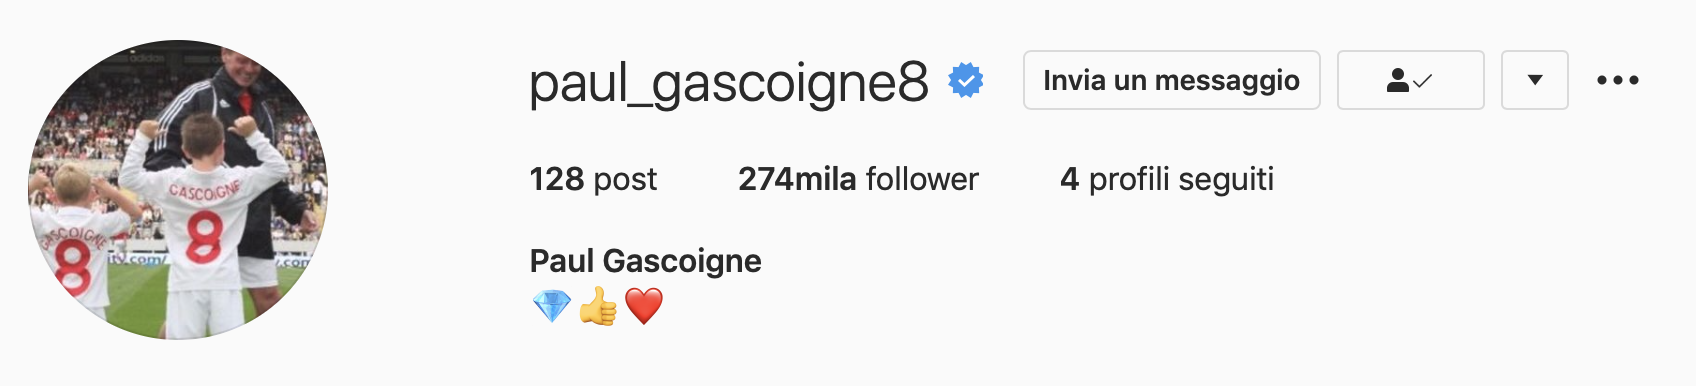 Paul Gascoigne profilo instagram